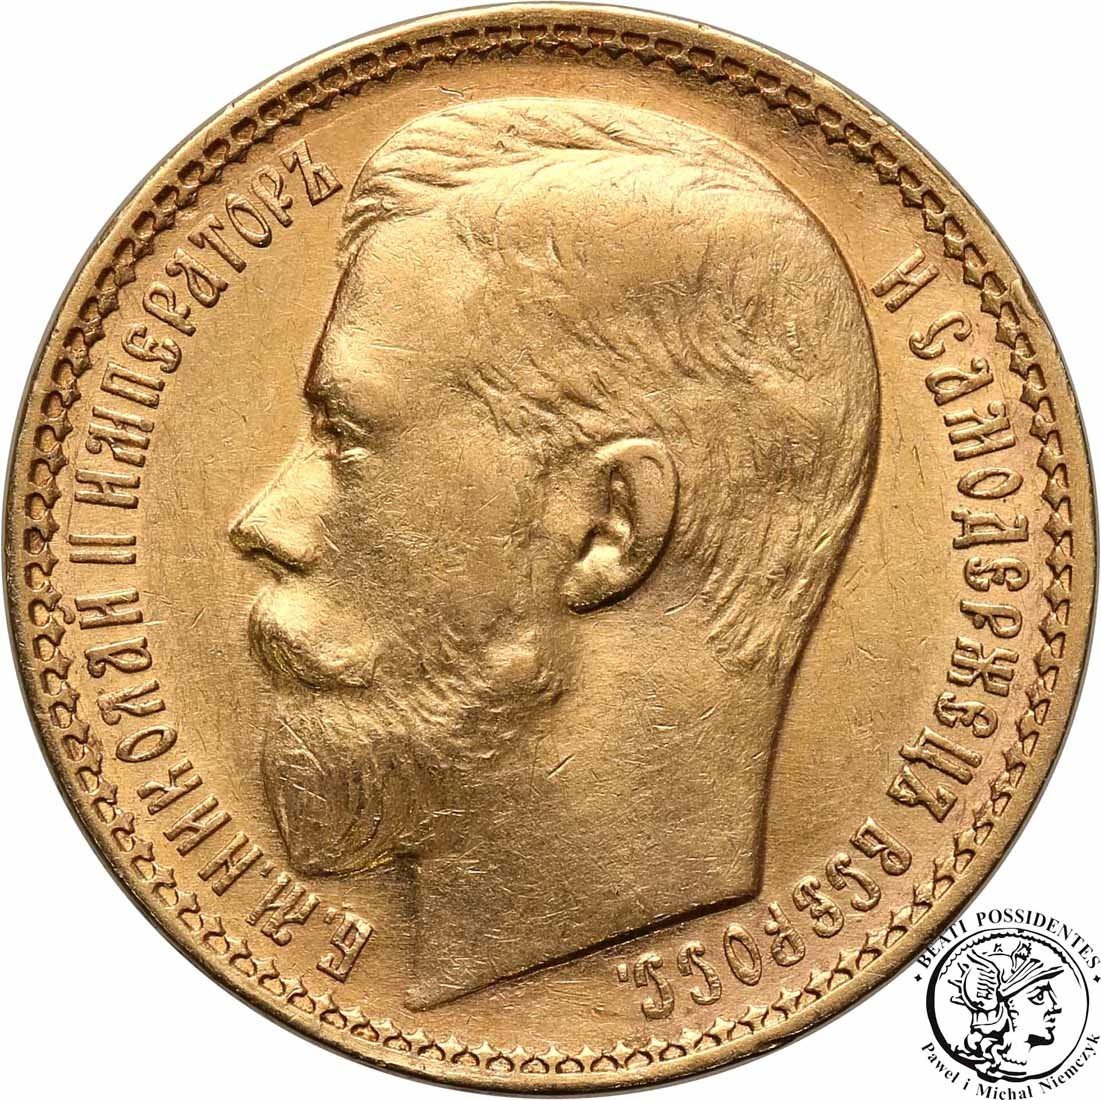 Rosja 15 Rubli 1897 odmiana wąska Mikołaj II st. 1-